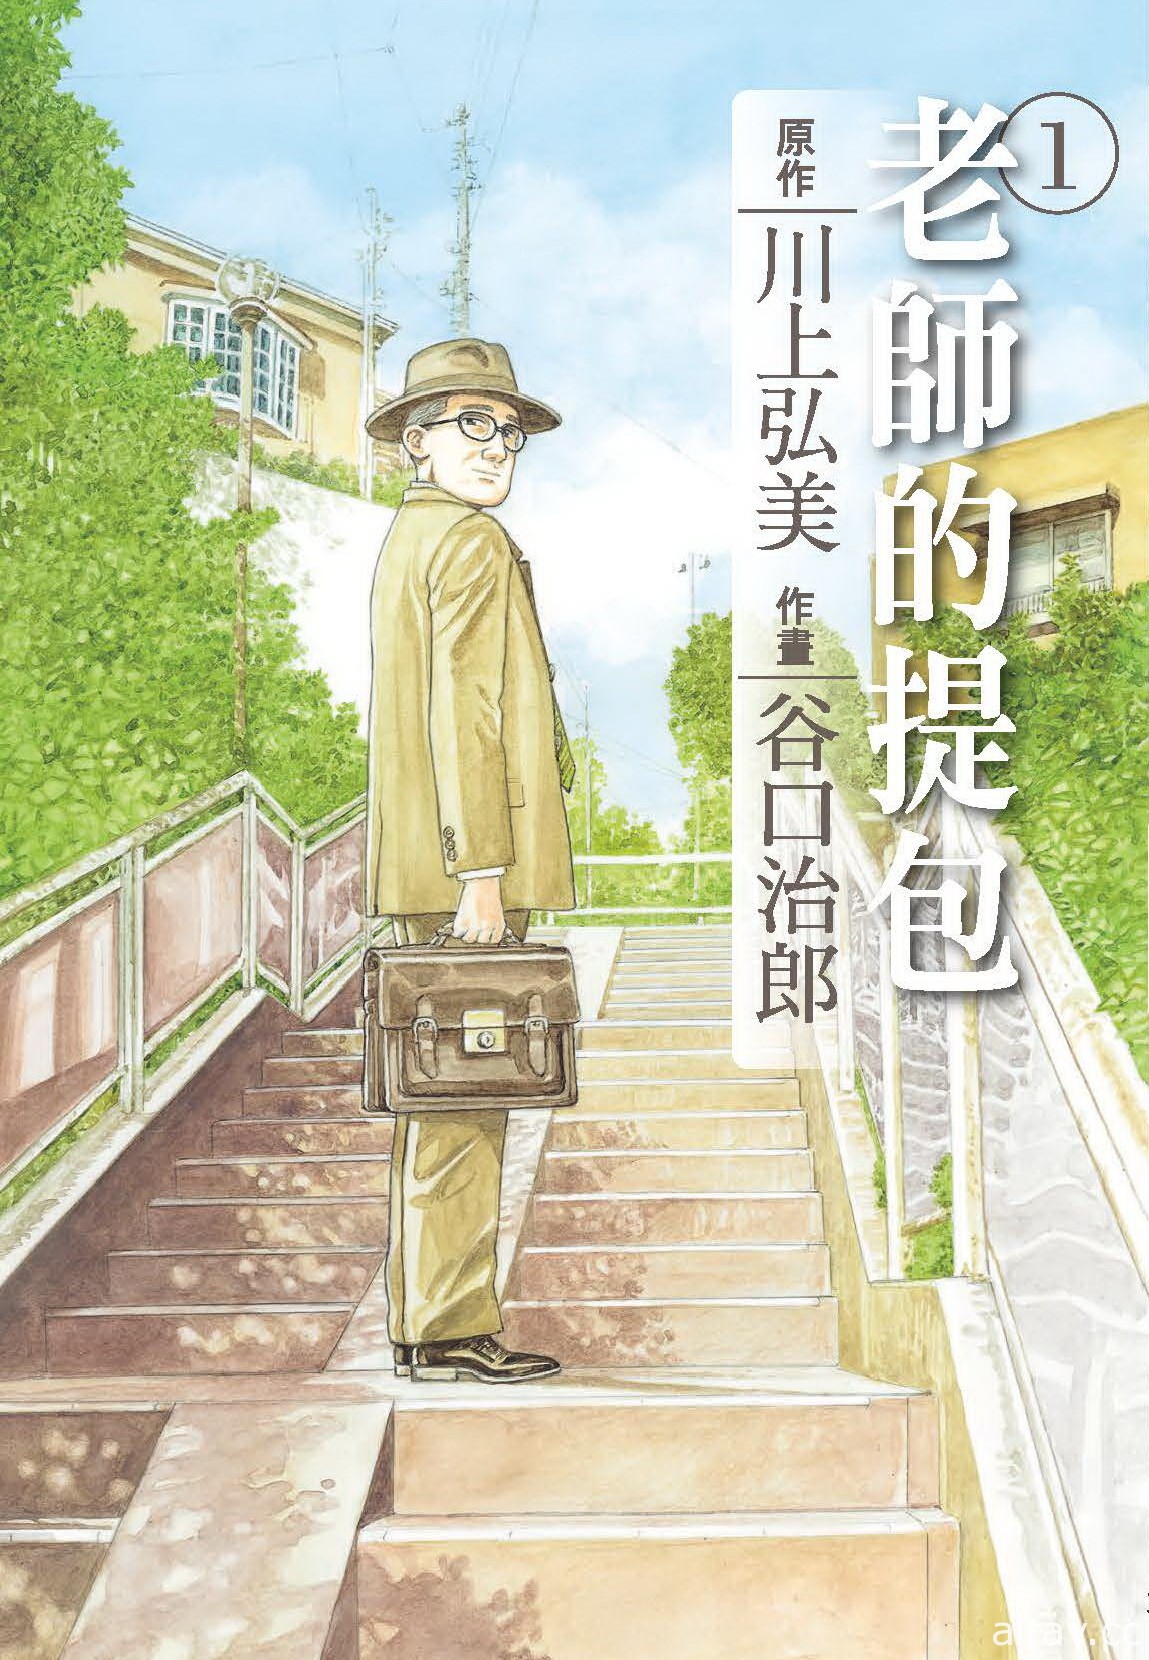 【书讯】台湾东贩 1 月漫画新书《二分之一男友》等作